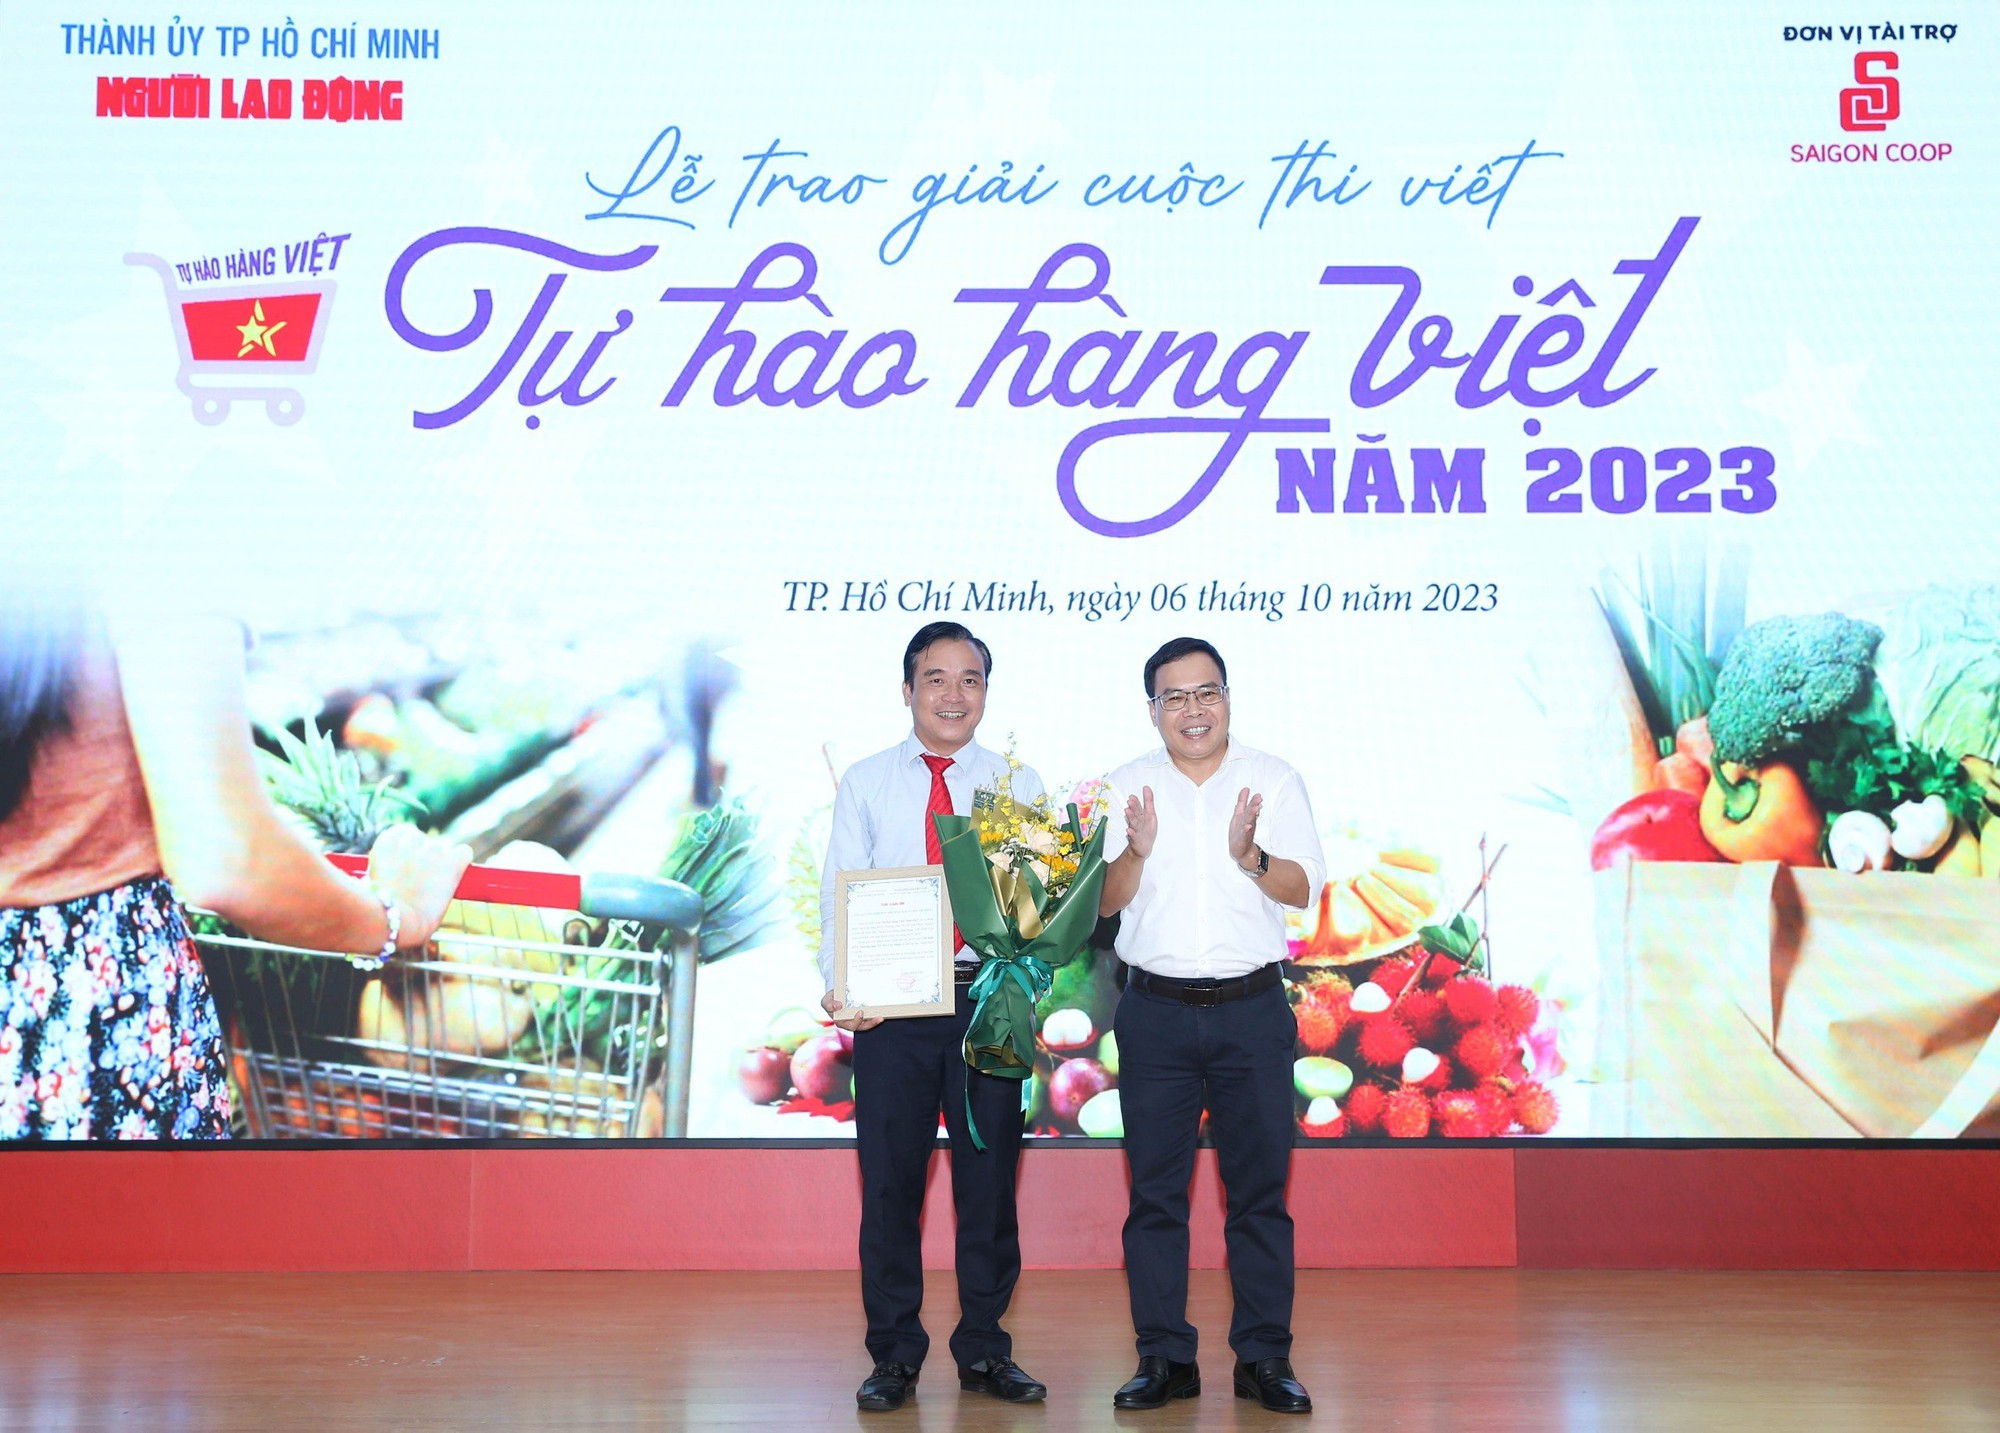 Nhớ lần dìu ngoại đi siêu thị đoạt giải nhất cuộc thi “Tự hào hàng Việt” - Ảnh 3.